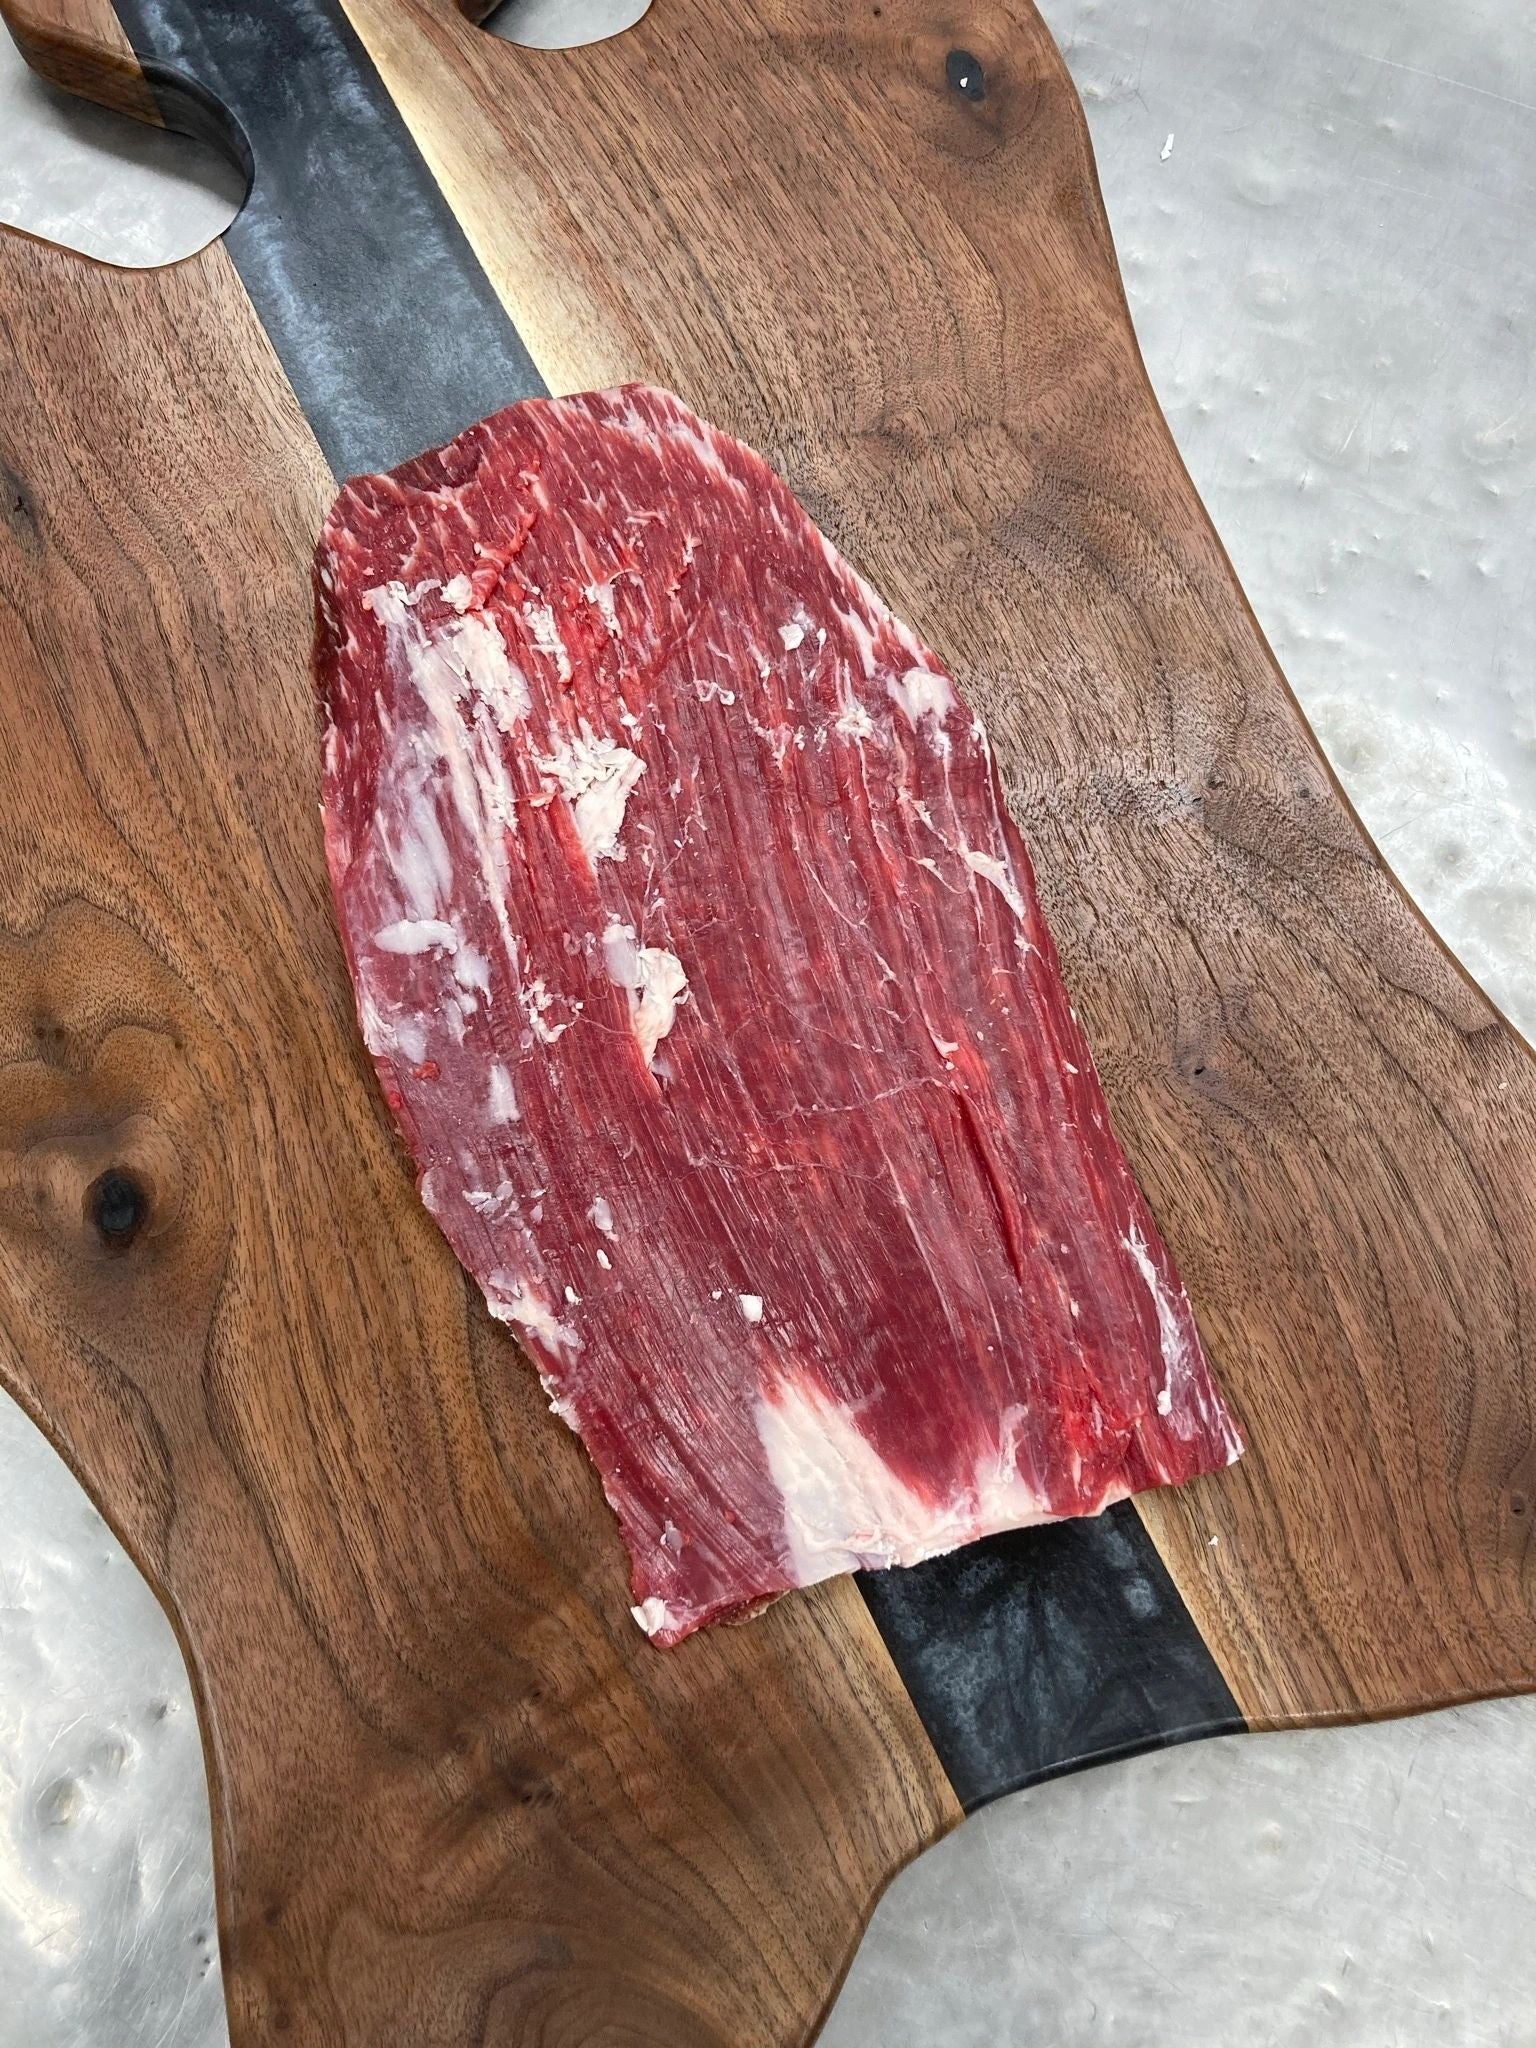 100% Full Blood Wagyu Flat Iron Steak